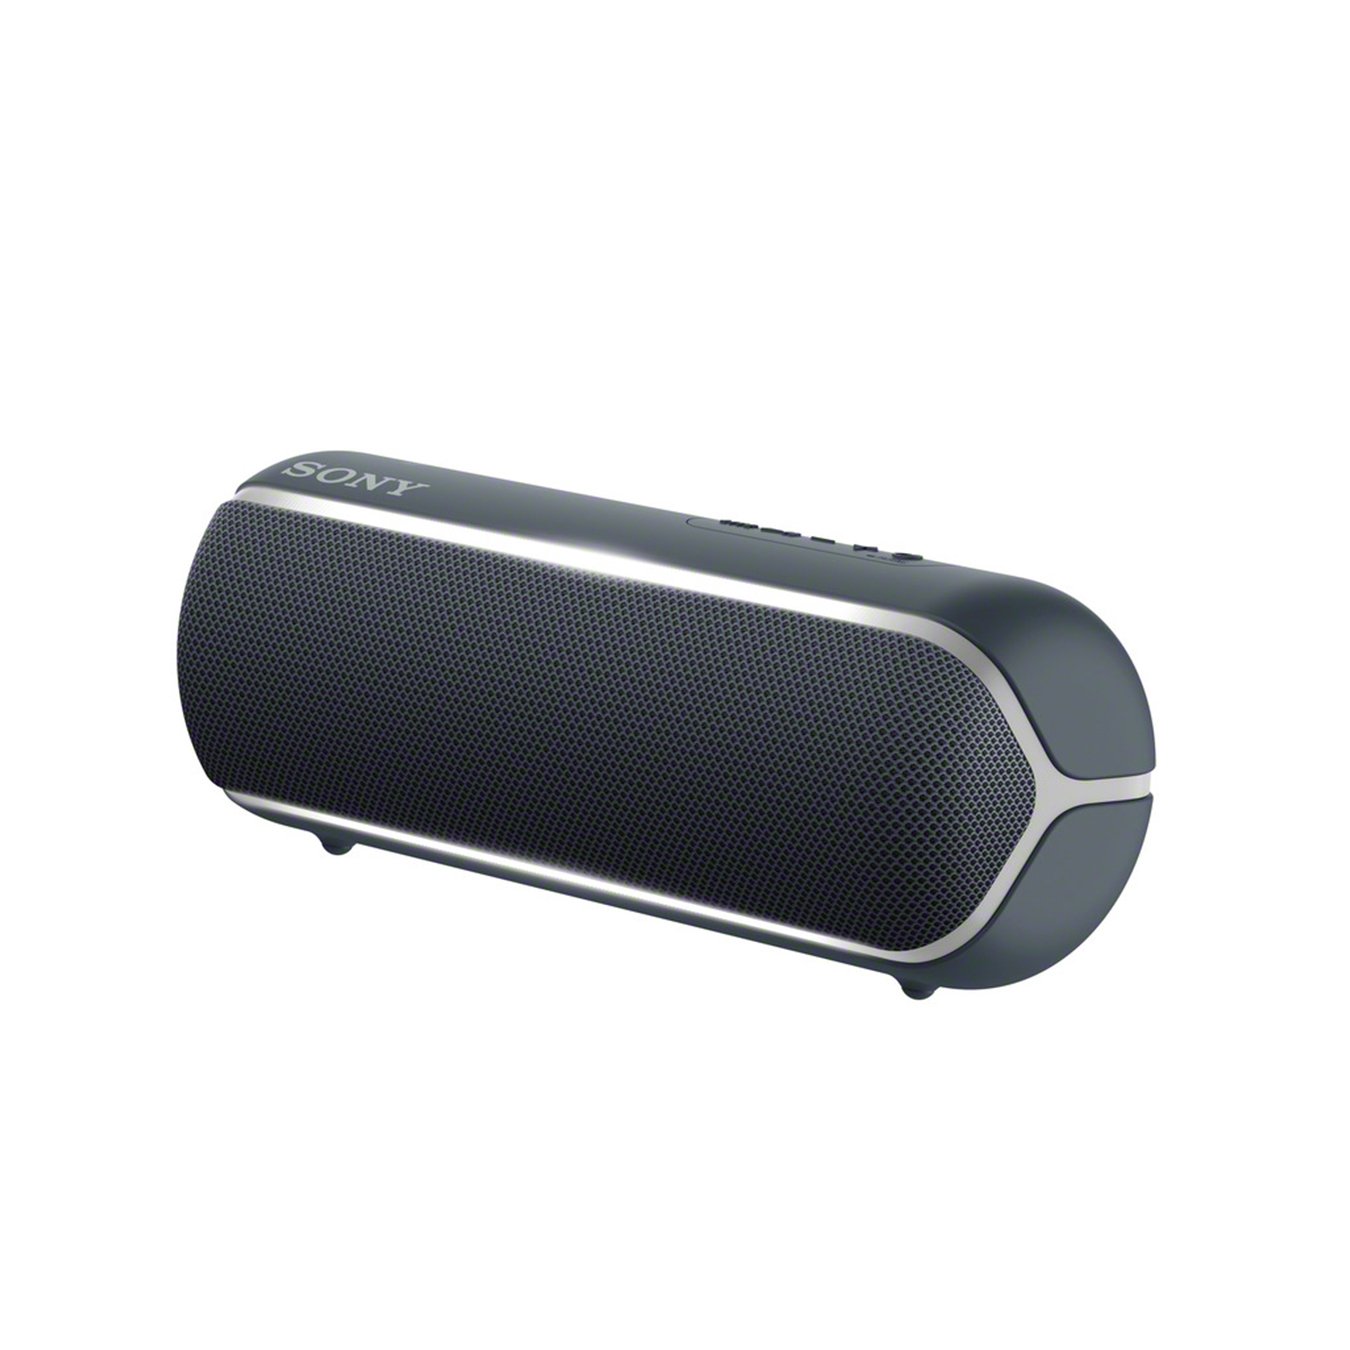 Sony SRS-XB22 Portable Wireless Speaker - Black